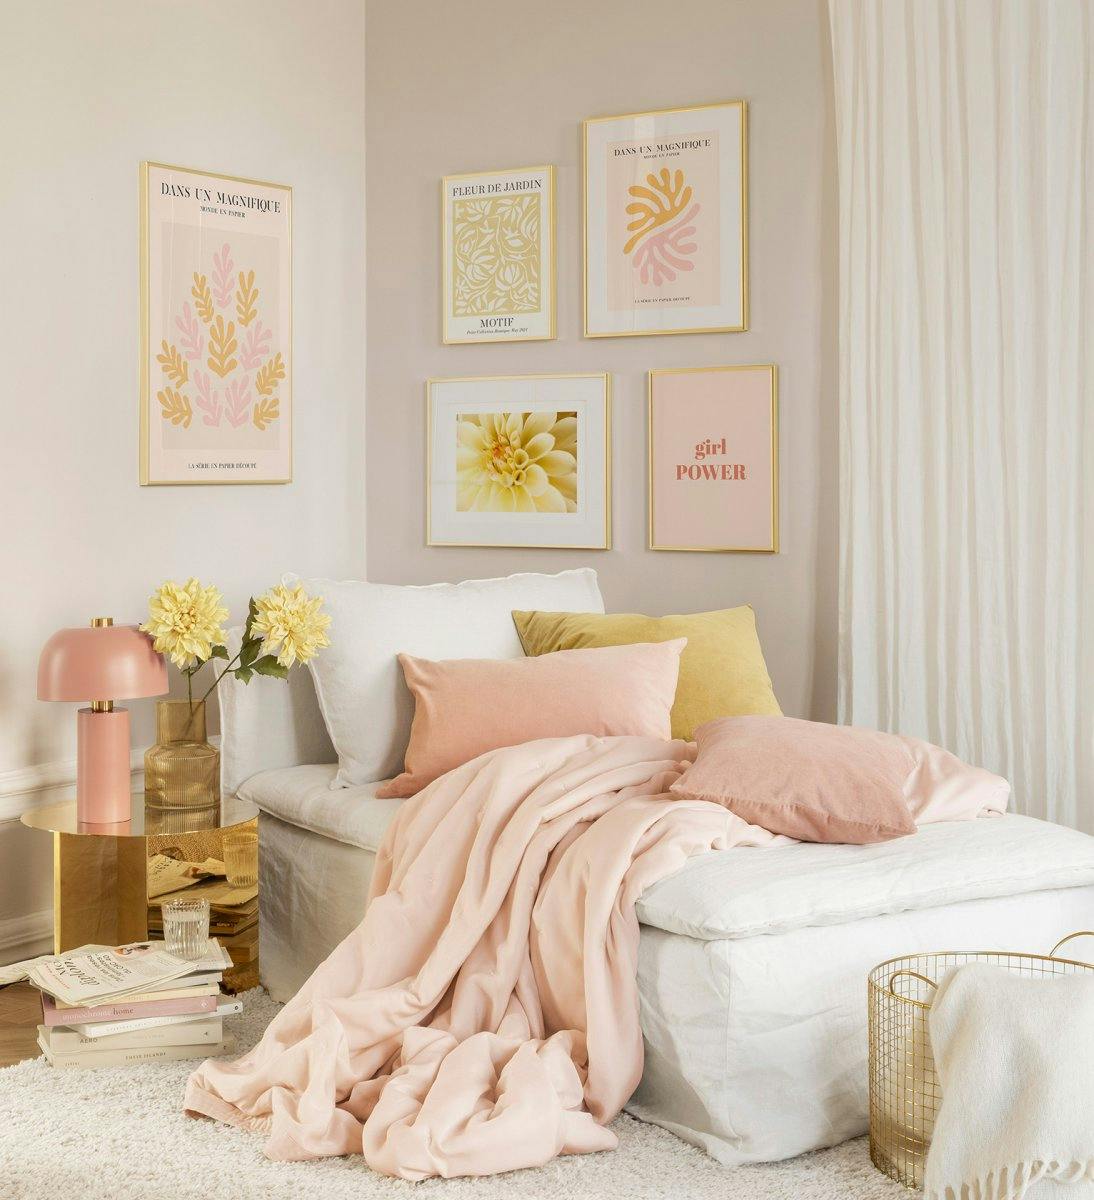 Trendy fotowand met wandkunst in roze en oranje in gouden kaders voor de slaapkamer